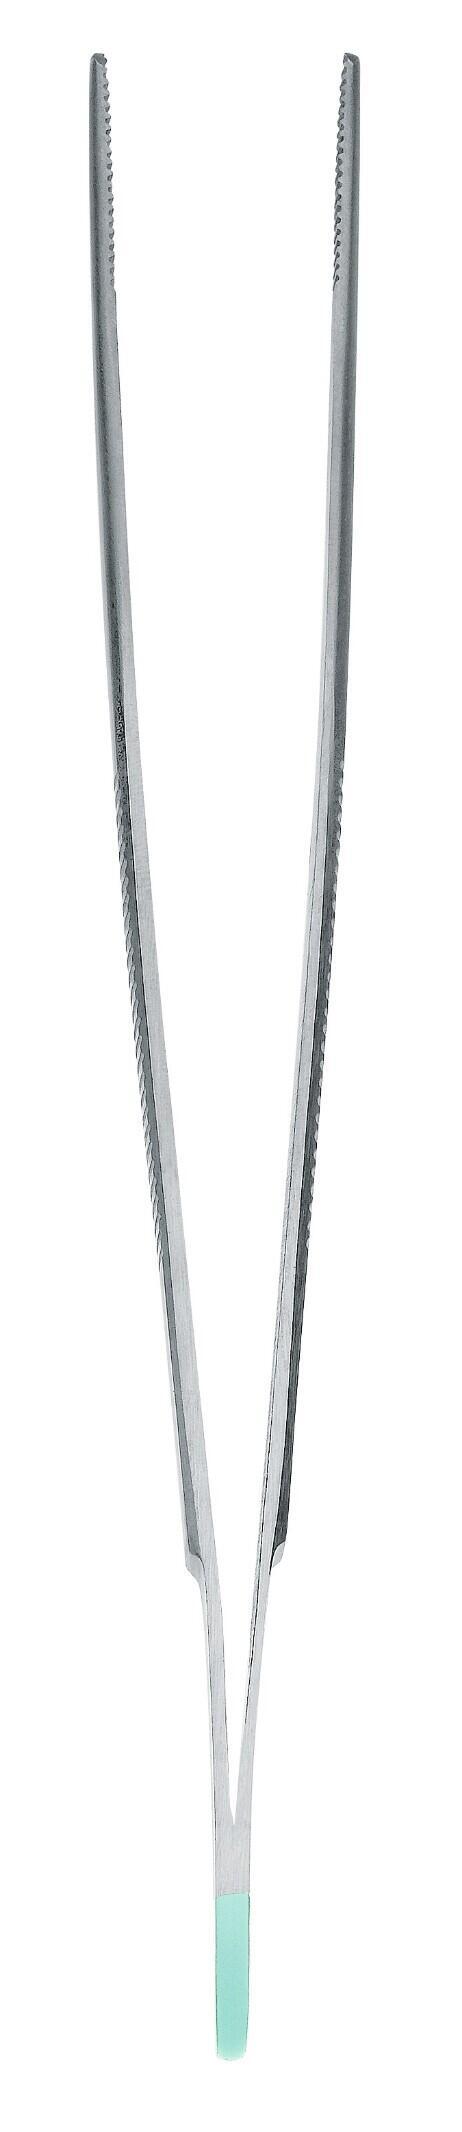 Freckle instrument standard tweezers anatomically straight 14cm